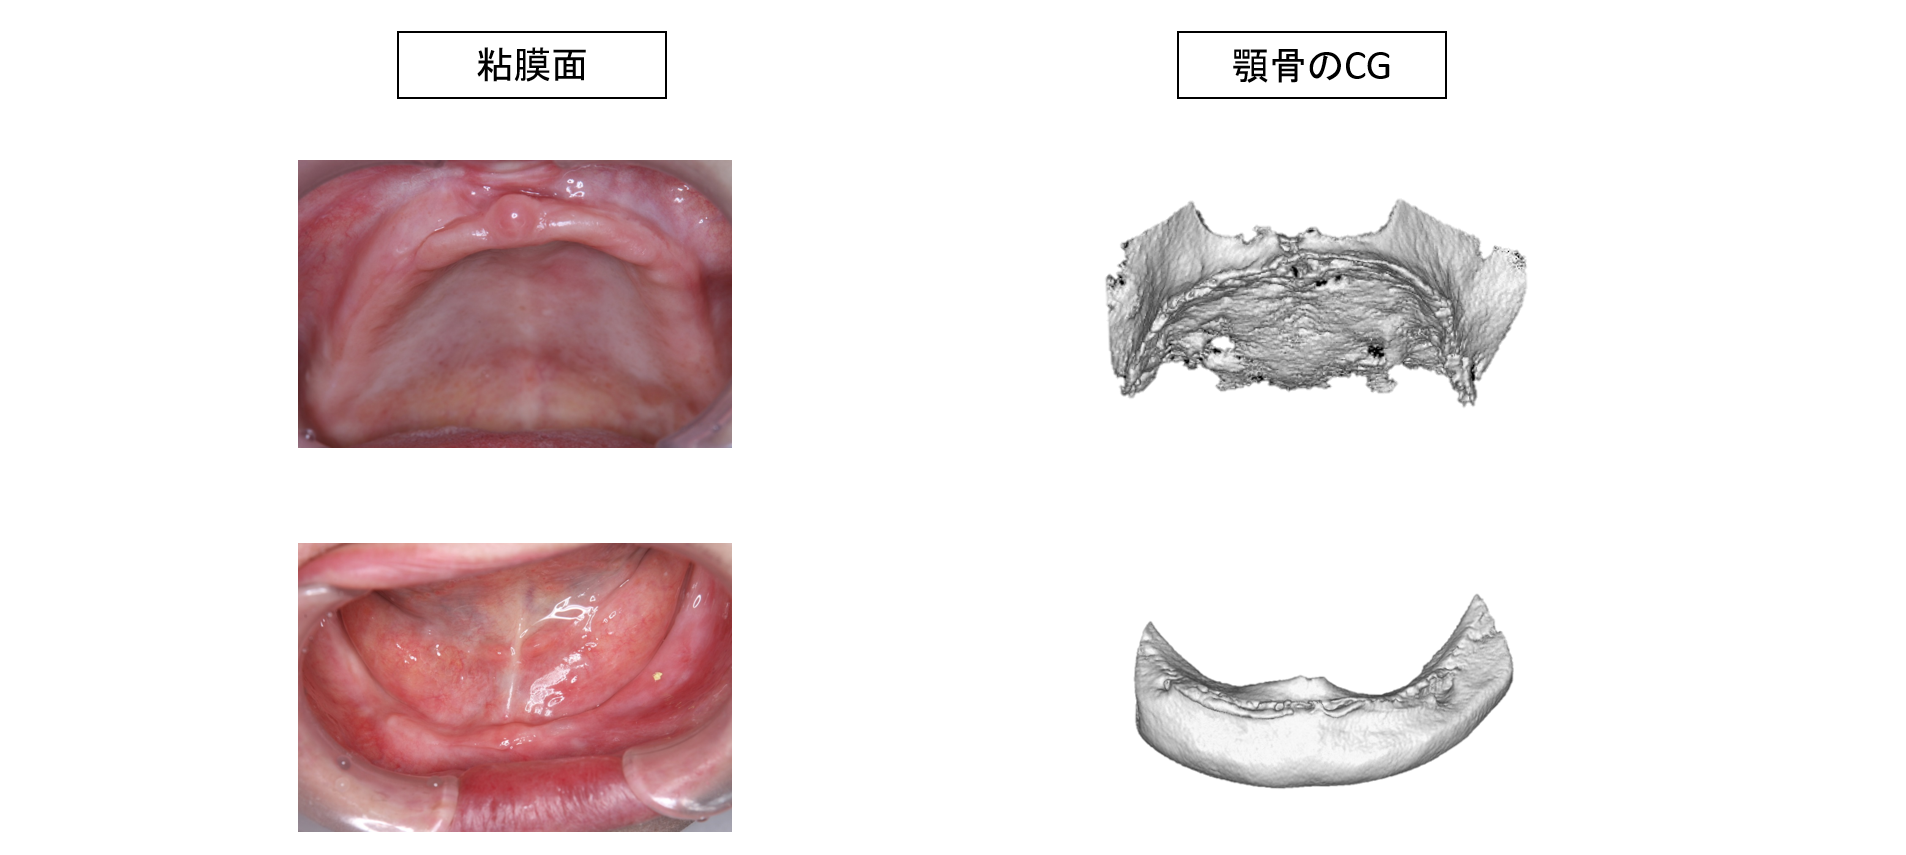 経堂（世田谷区）の歯医者、K.i歯科で、総義歯治療